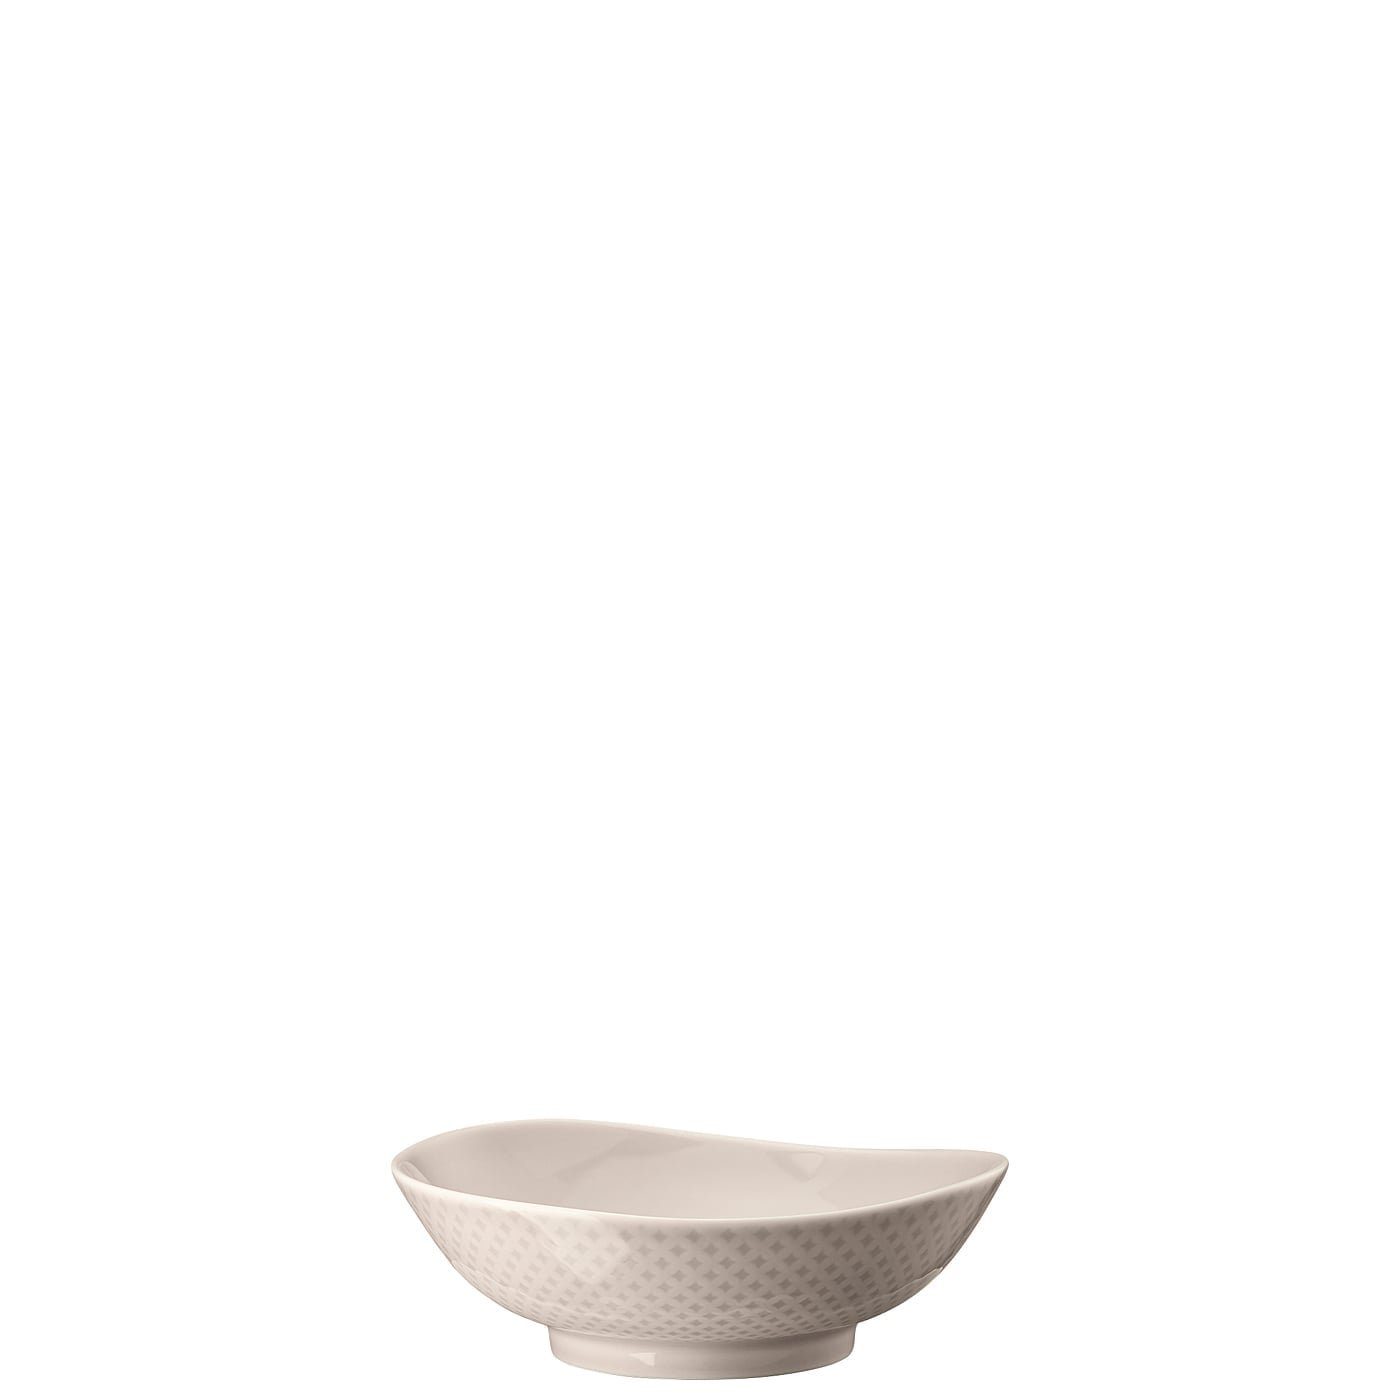 Rosenthal Schale Junto Soft Shell Bowl 15 cm, Porzellan, mikrowellengeeignet